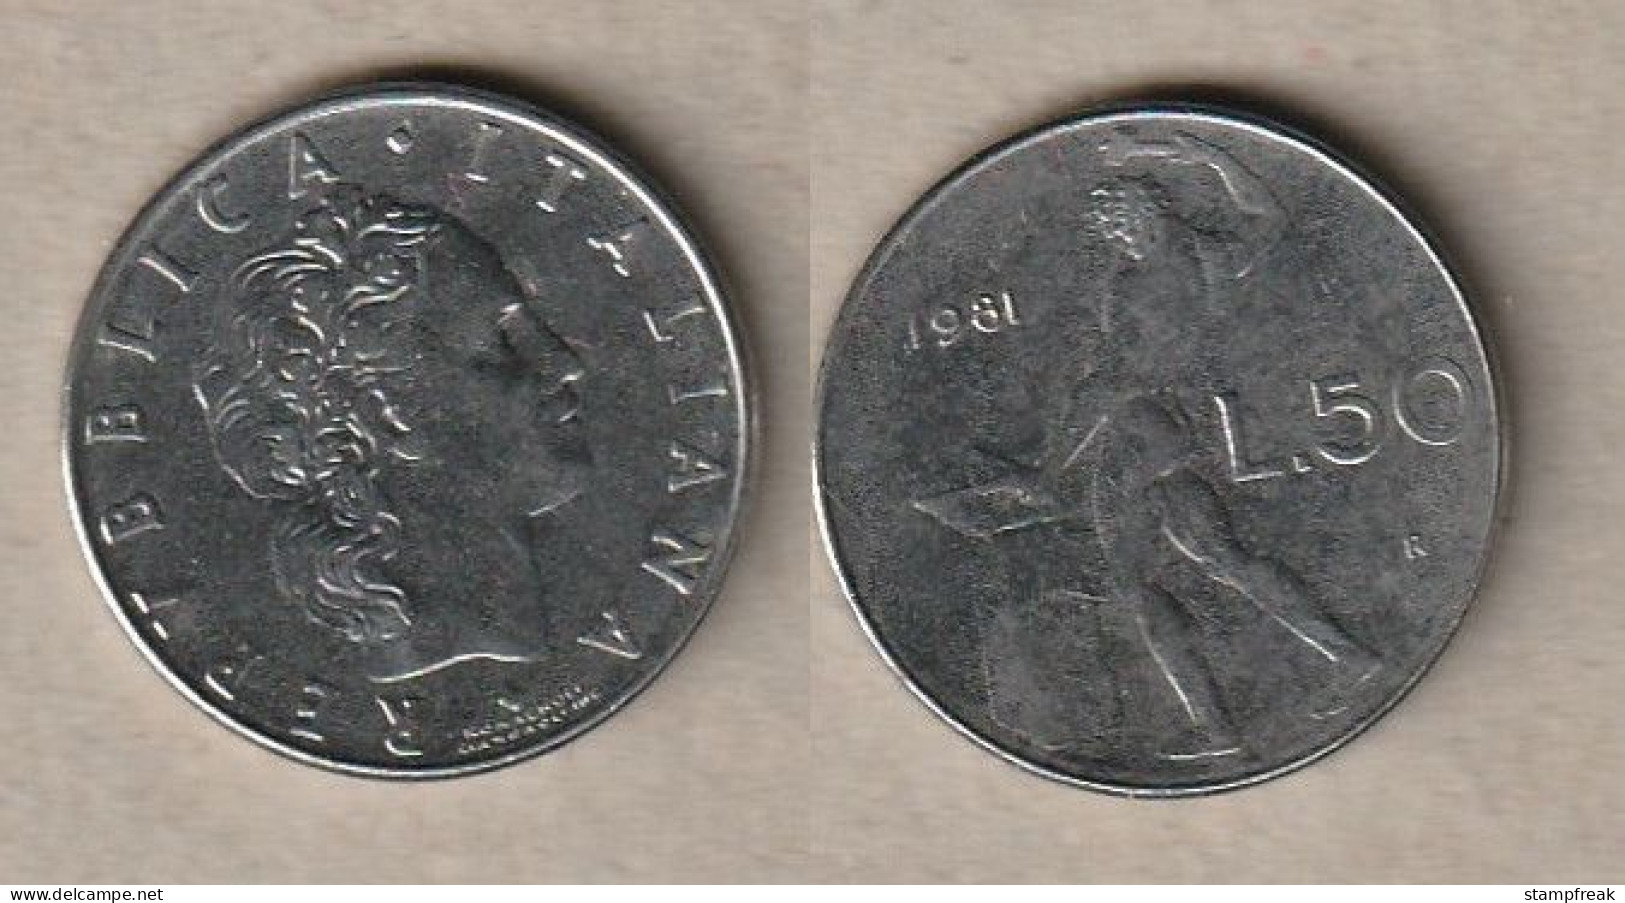 00494) Italien, 50 Lire 1981 - 50 Liras